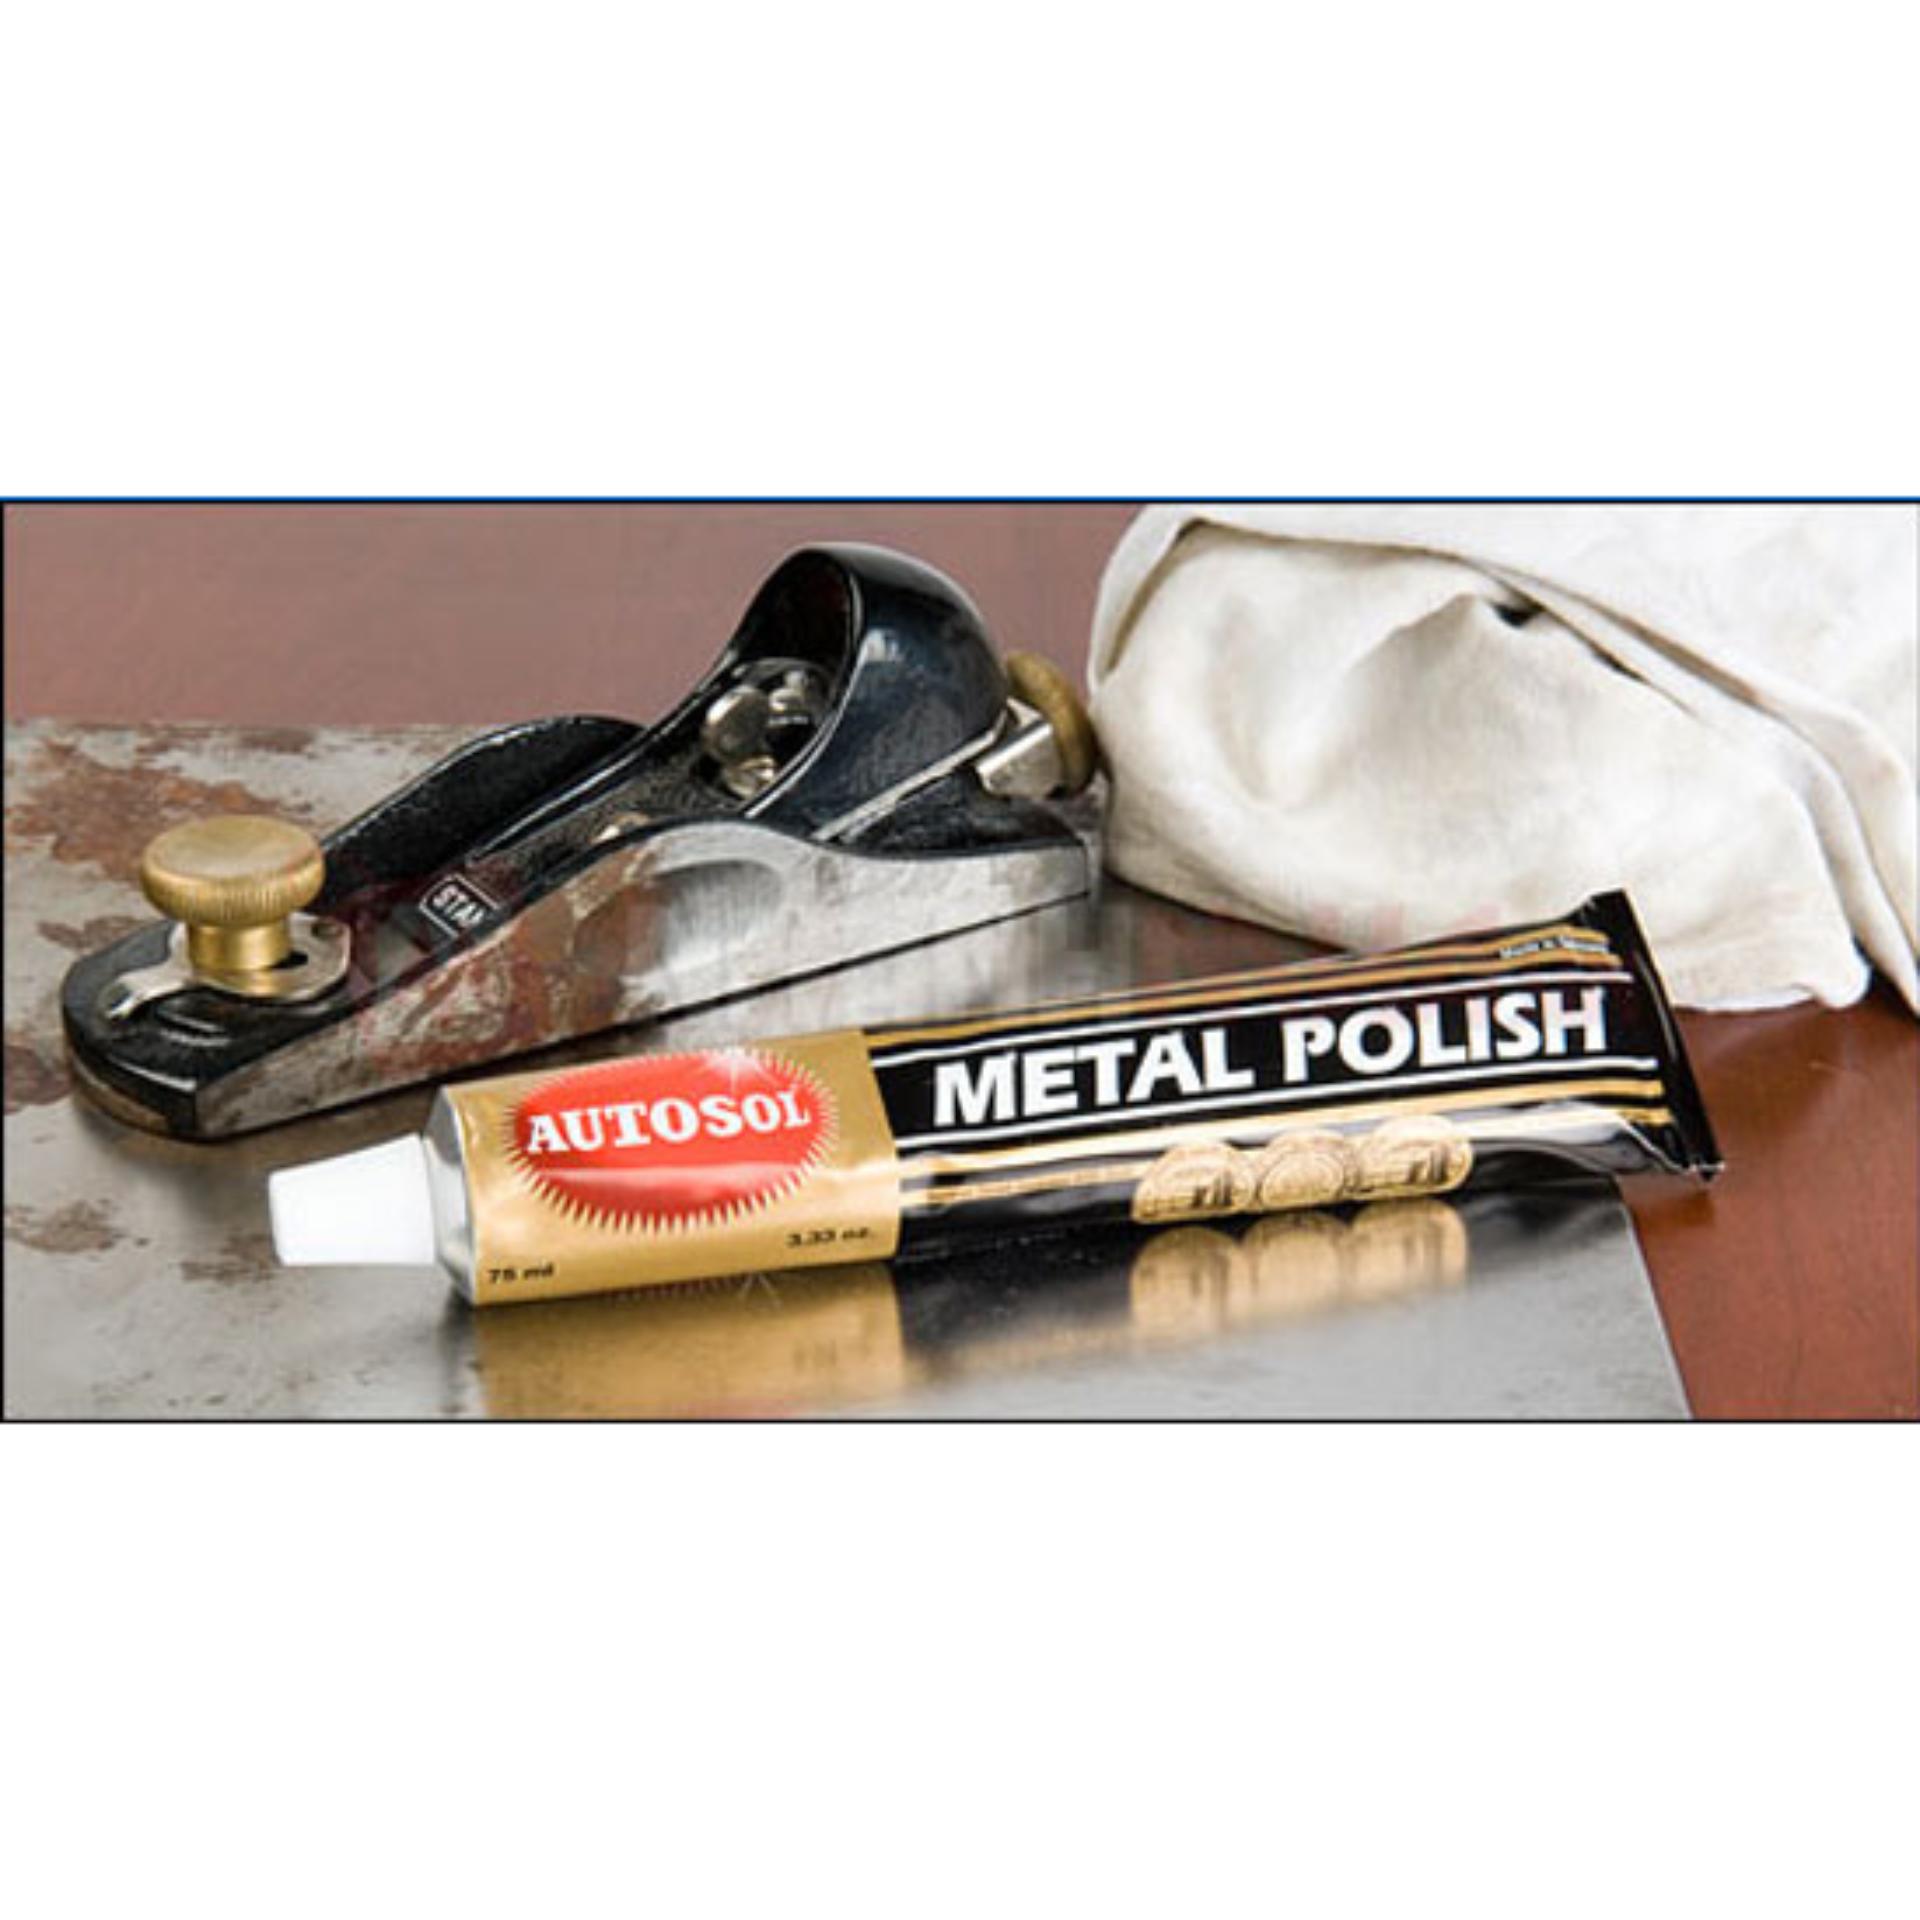 Kem Autosol Metal Polish- đánh bóng đồ dùng kim loại chuẩn bị đón tết